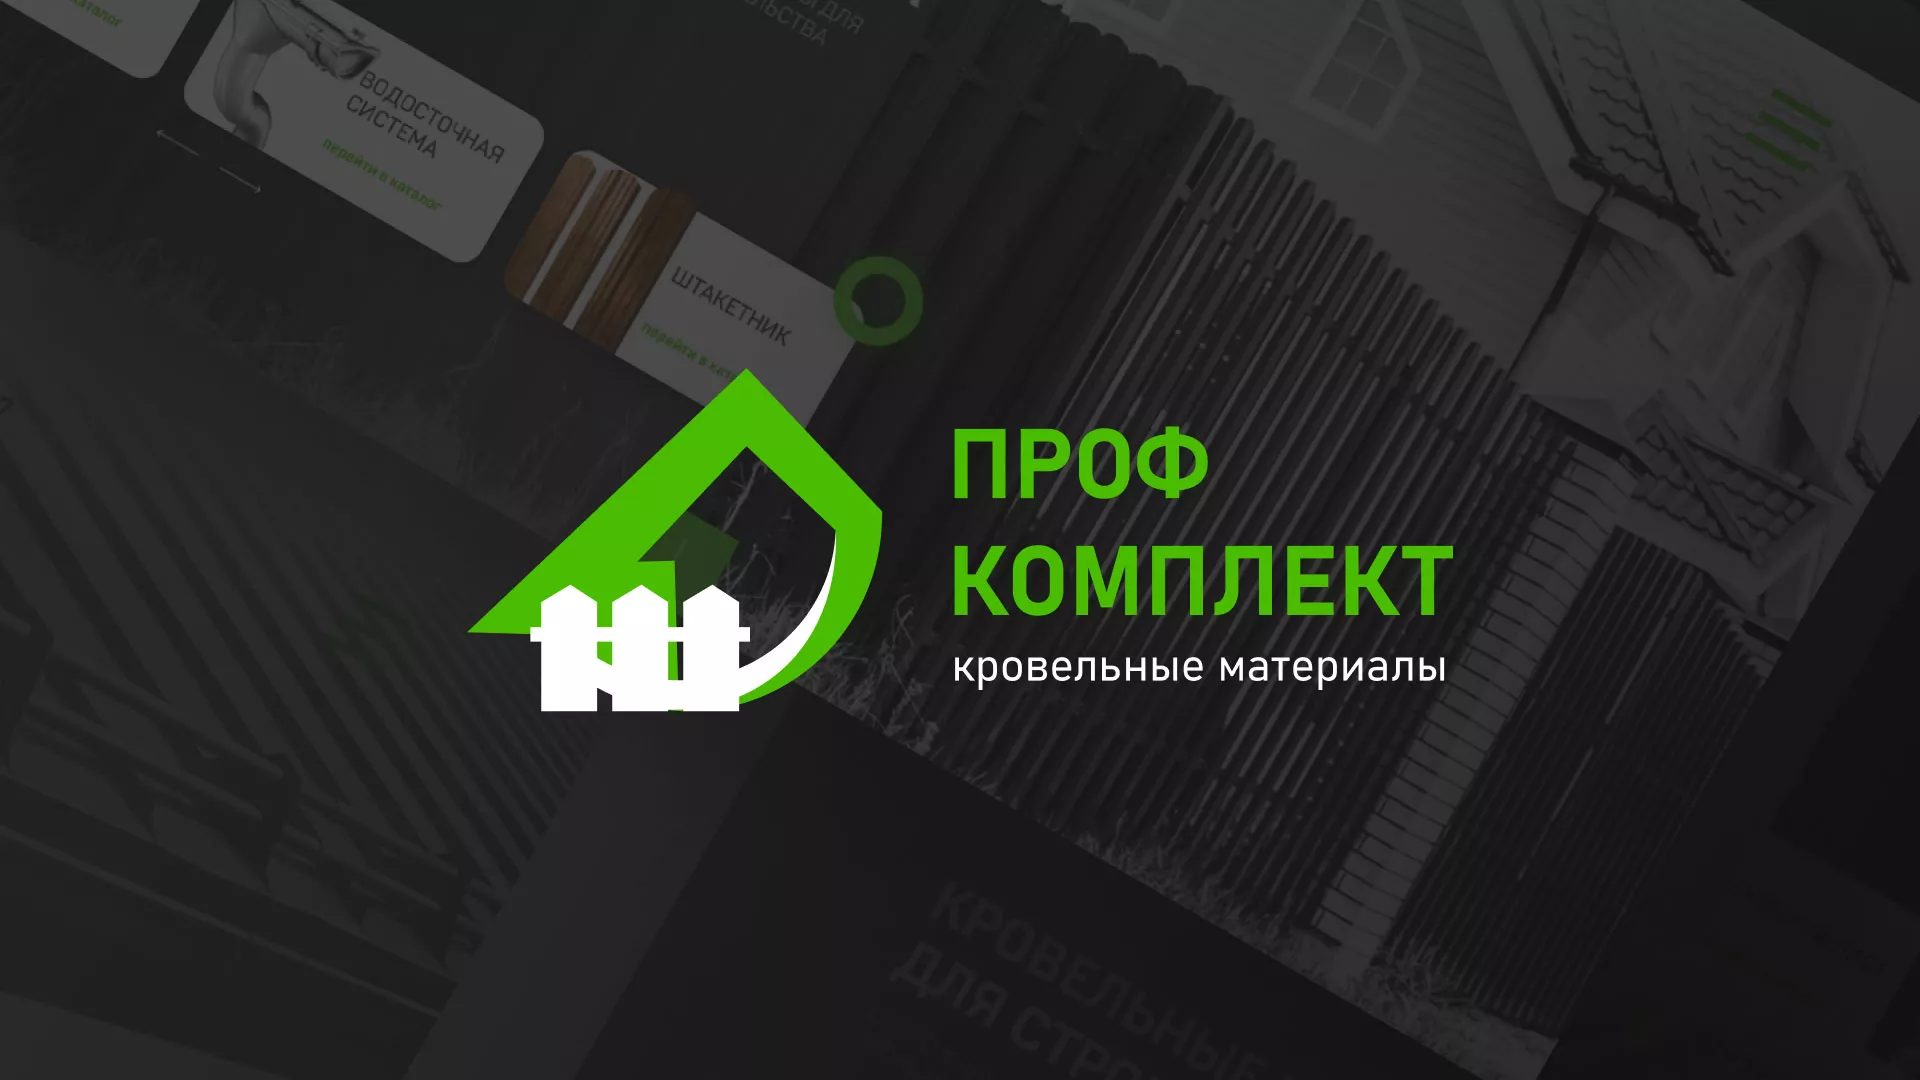 Создание сайта компании «Проф Комплект» в Соколе